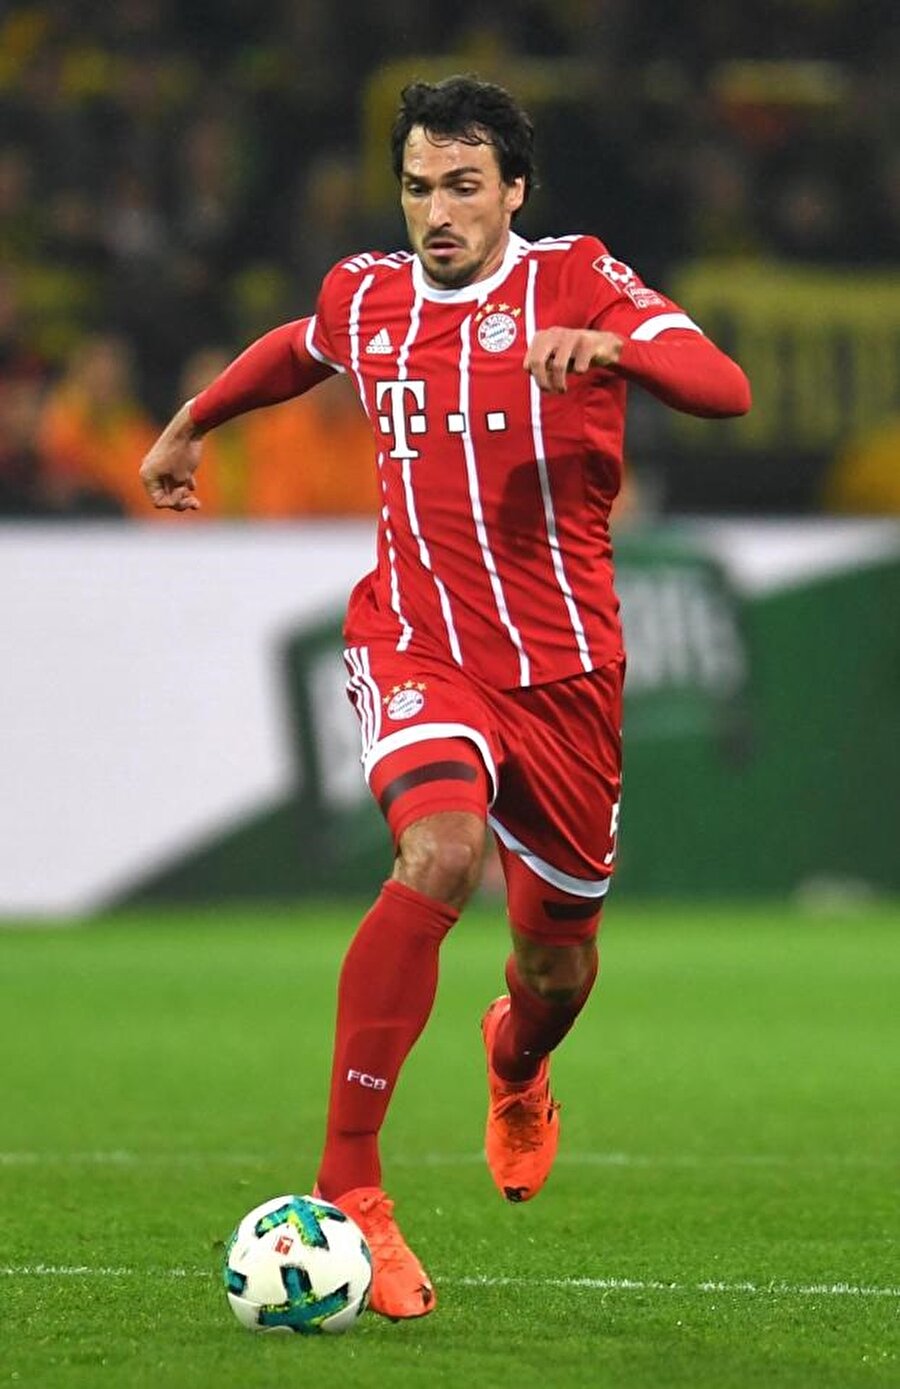 Mats Hummels bu sezon Bayern Münih formasıyla 41 maça çıktı ve 3 kez ağları sarstı.